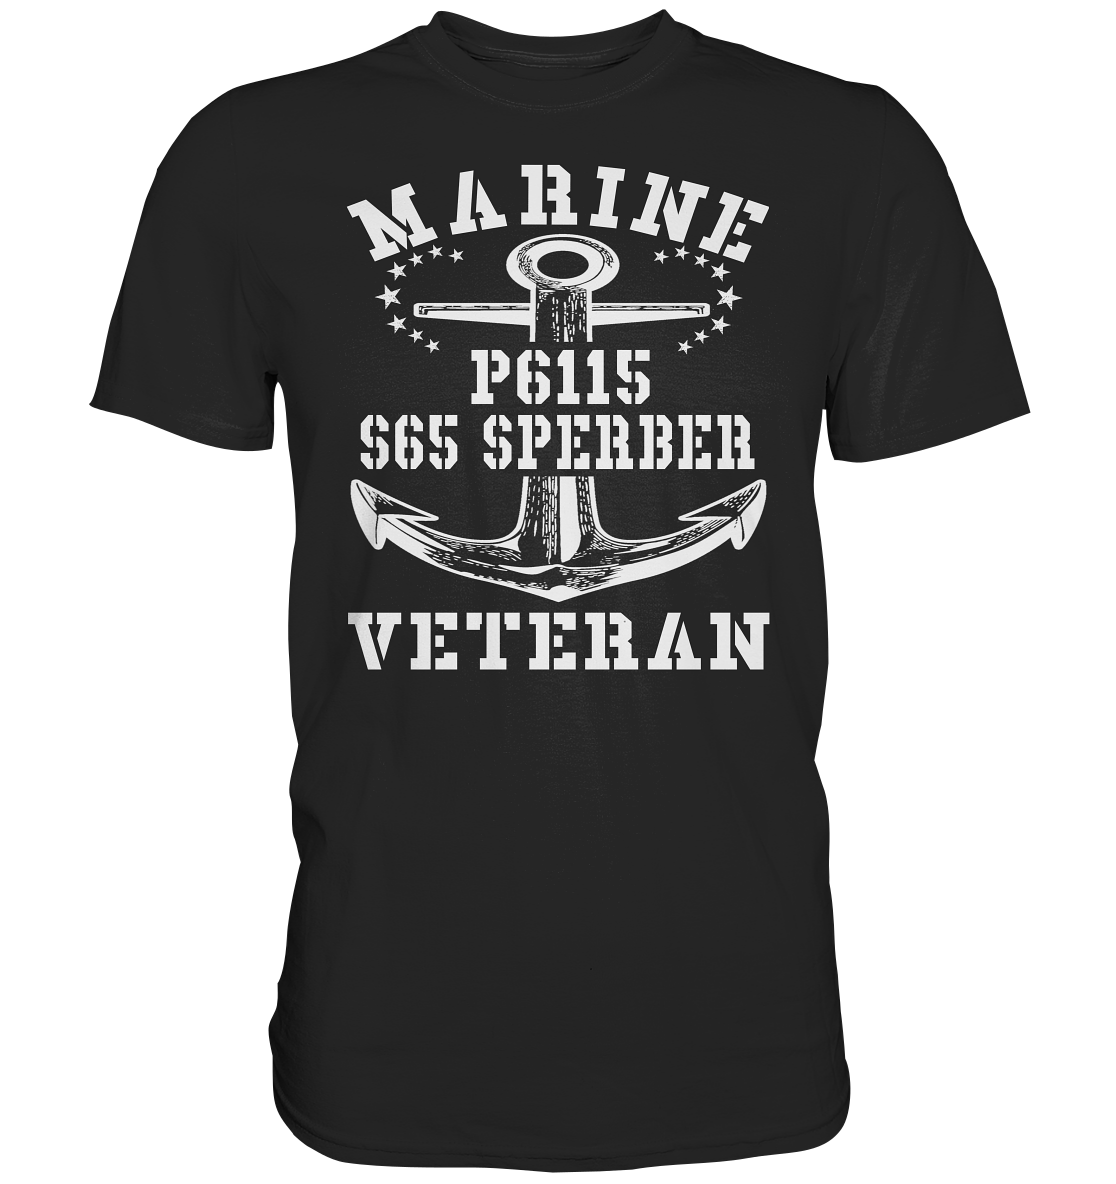 FK-Schnellboot P6115 SPERBER Marine Veteran - Premium Shirt